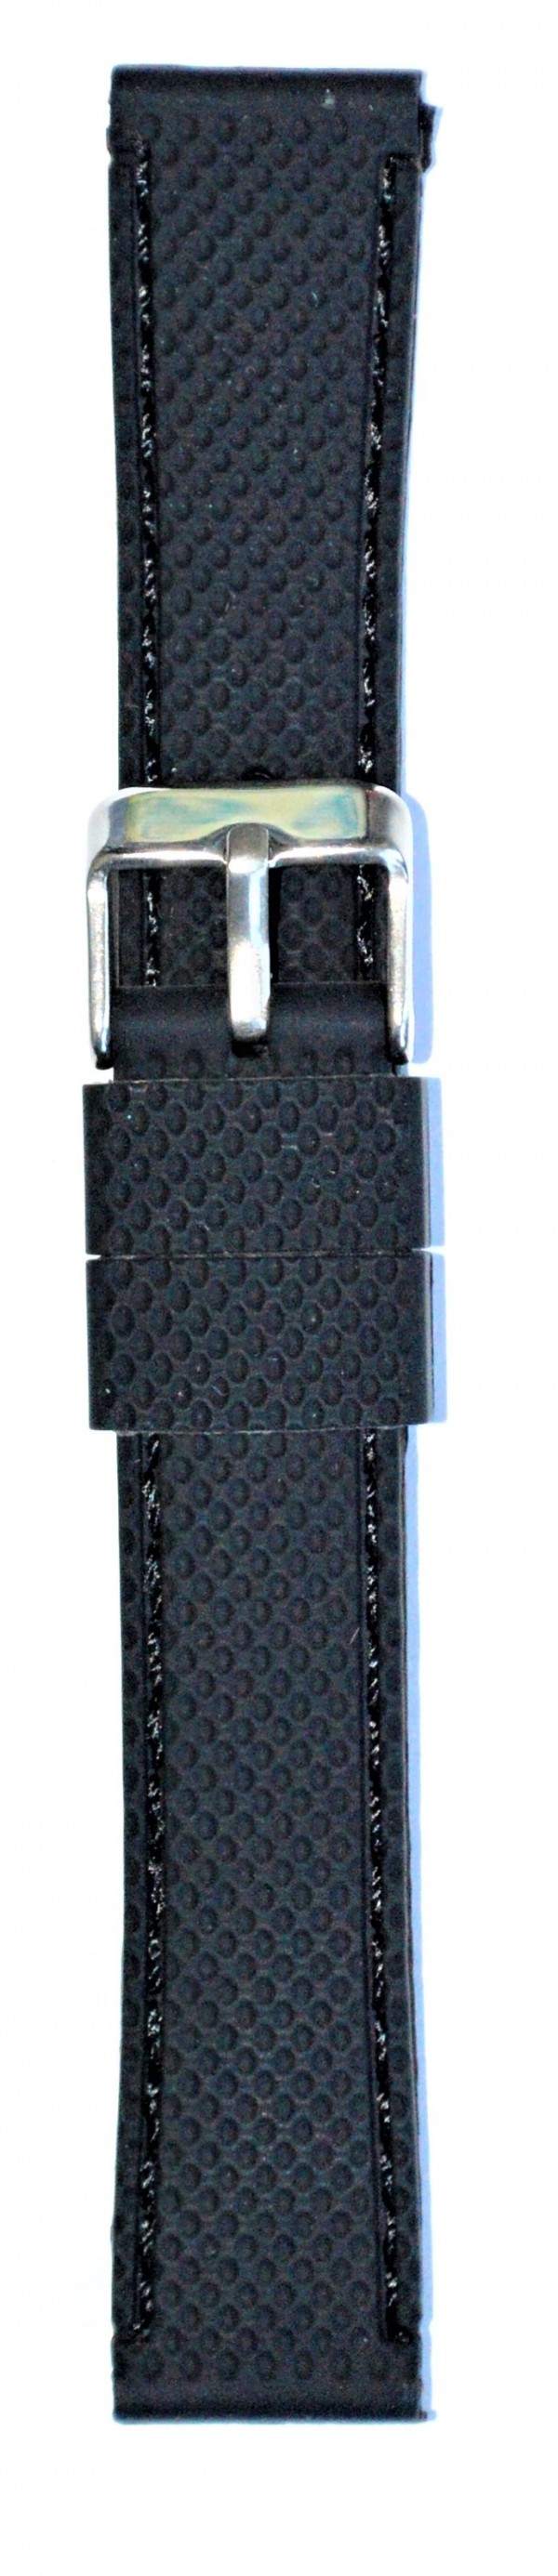 Silikonski kaiš - SK 18.34 Crna boja 18mm